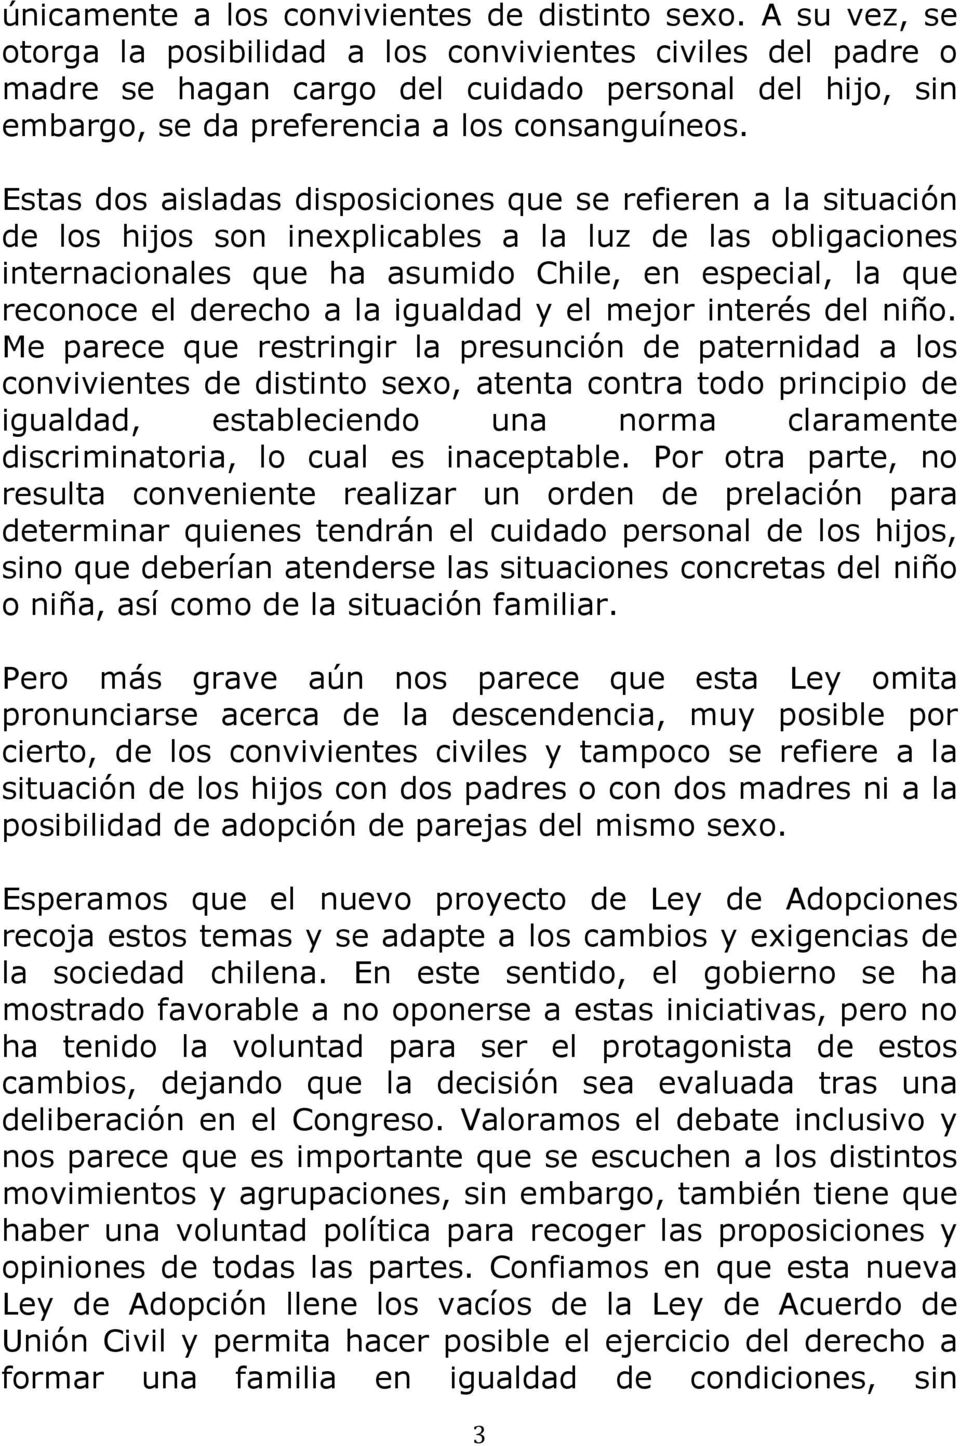 Estas dos aisladas disposiciones que se refieren a la situación de los hijos son inexplicables a la luz de las obligaciones internacionales que ha asumido Chile, en especial, la que reconoce el